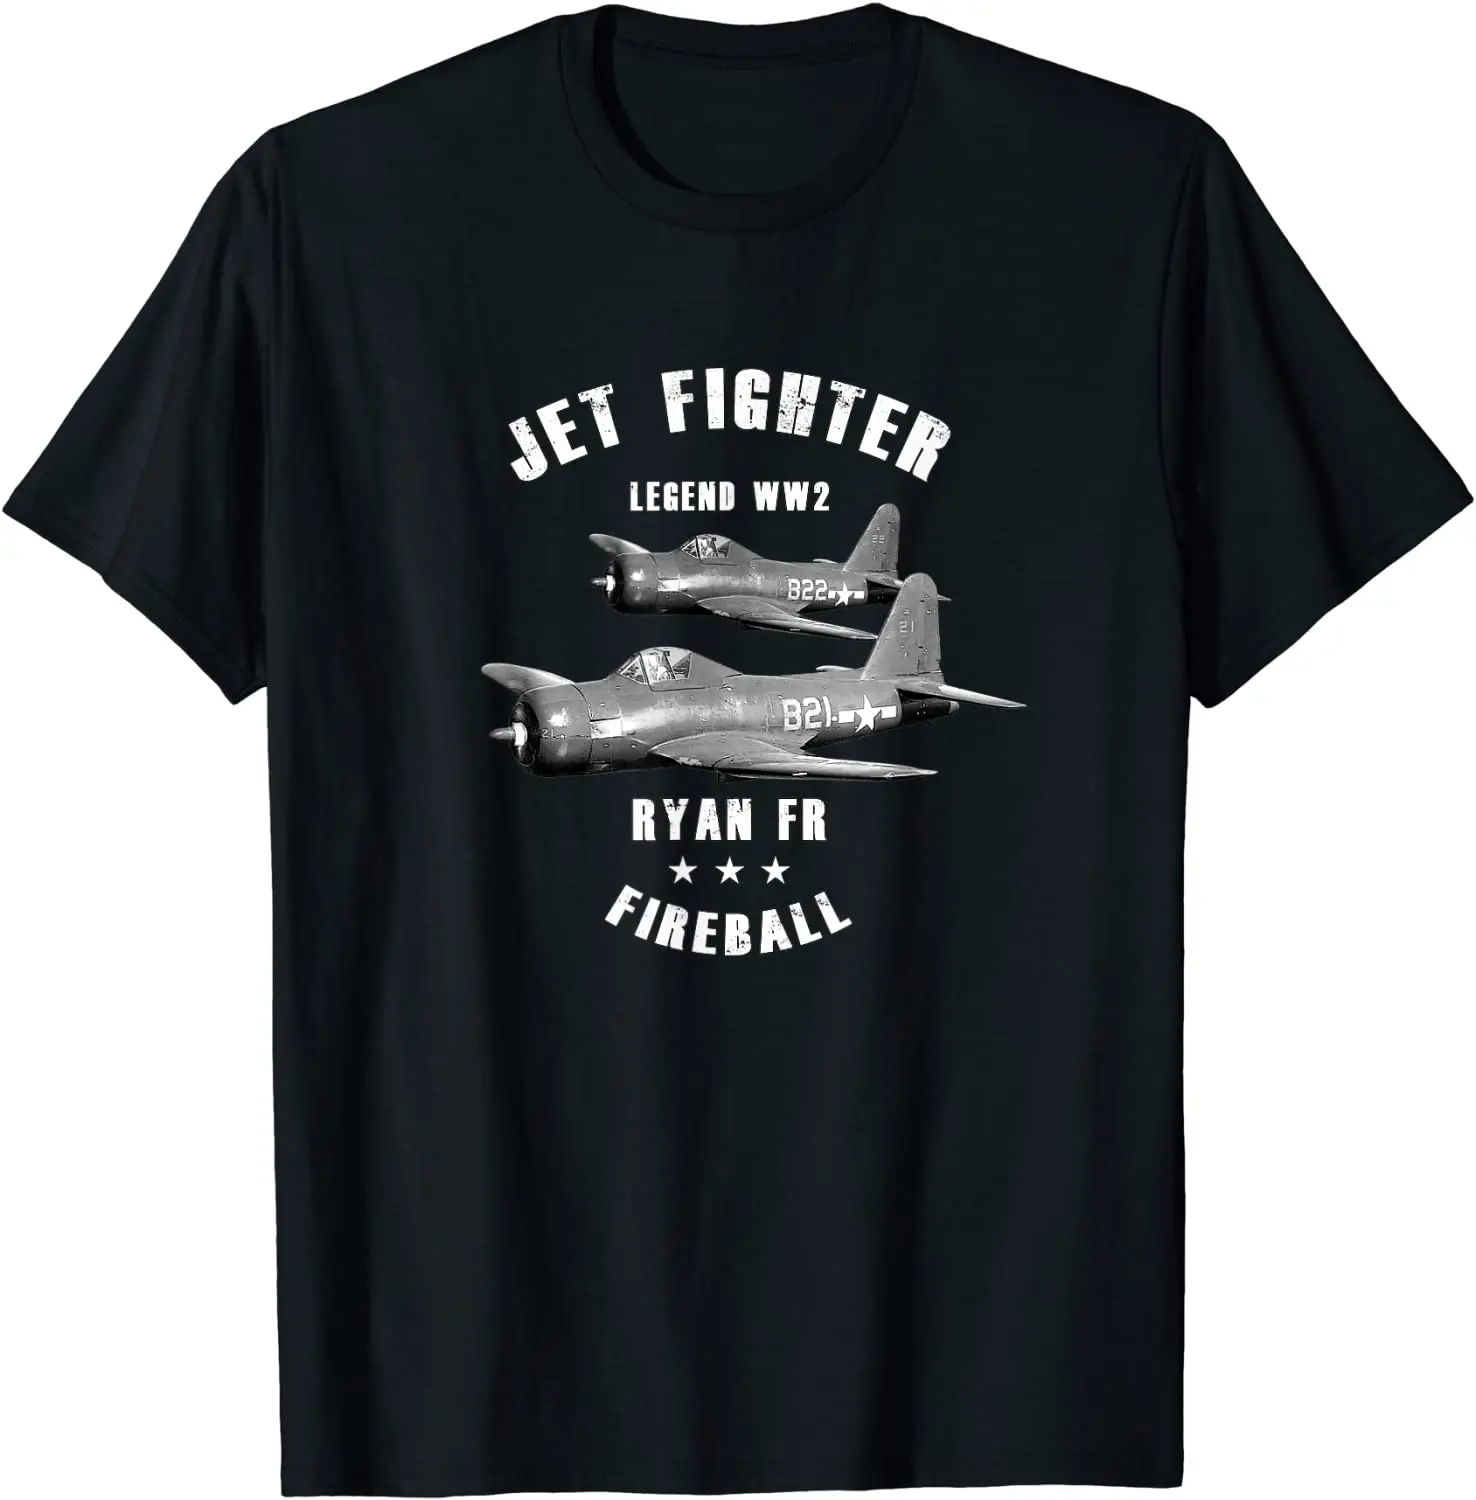 

Navy Ryan FR Fireball Fighter Aircraft T-Shirt. Summer Cotton Short Sleeve O-Neck Mens T Shirt New S-3XL